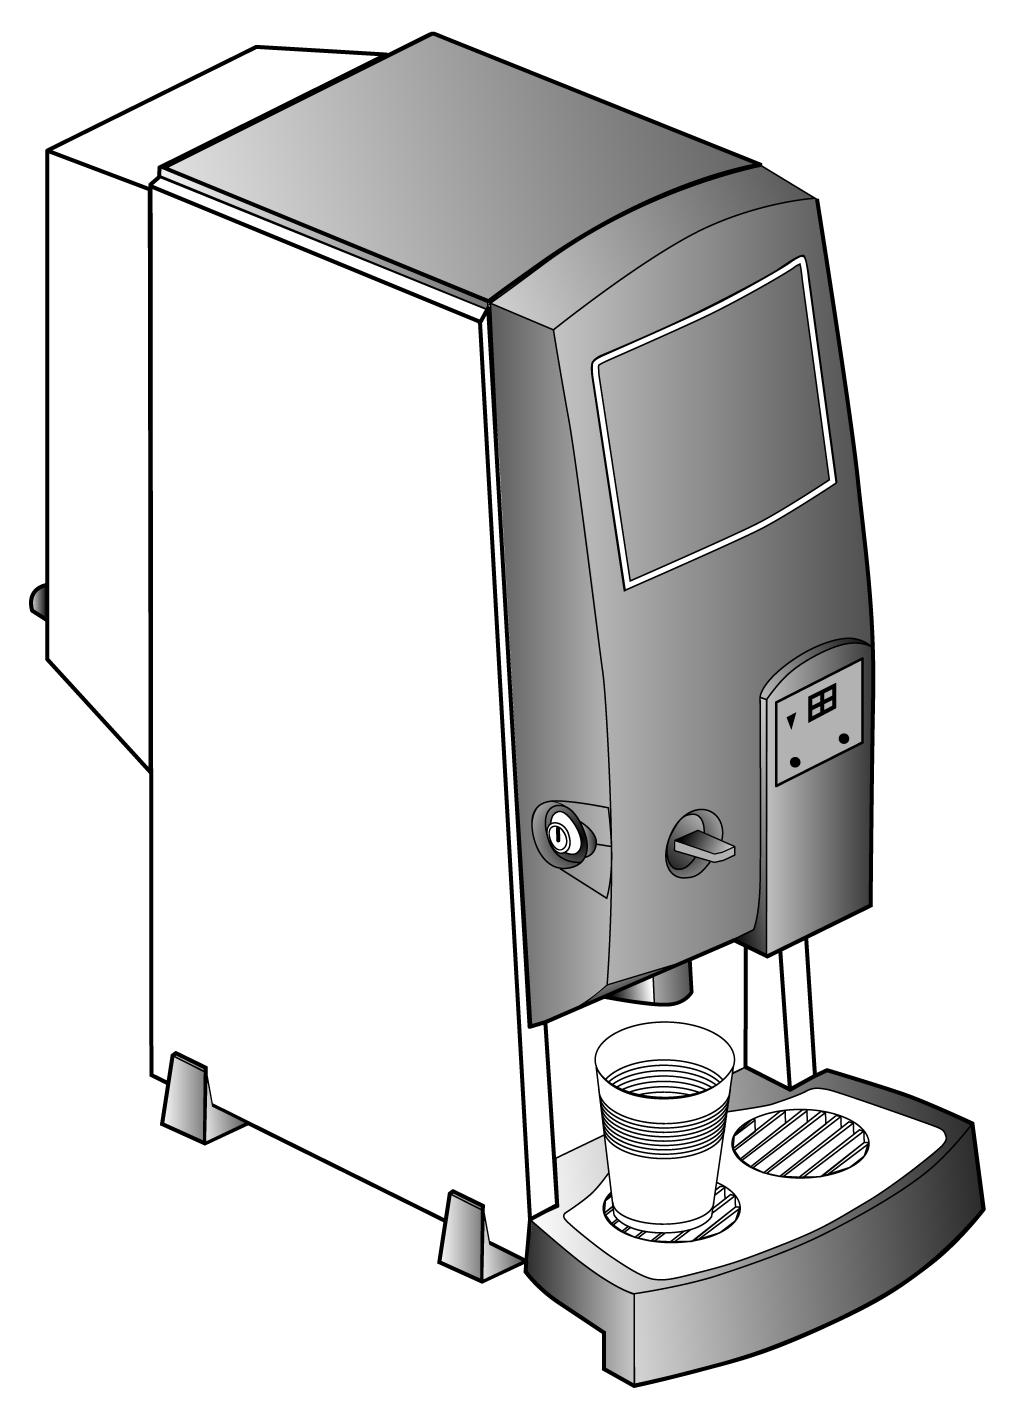 Bravilor Bonamat GB Operating instructions CHILLER Chilled water dispenser 700.403.